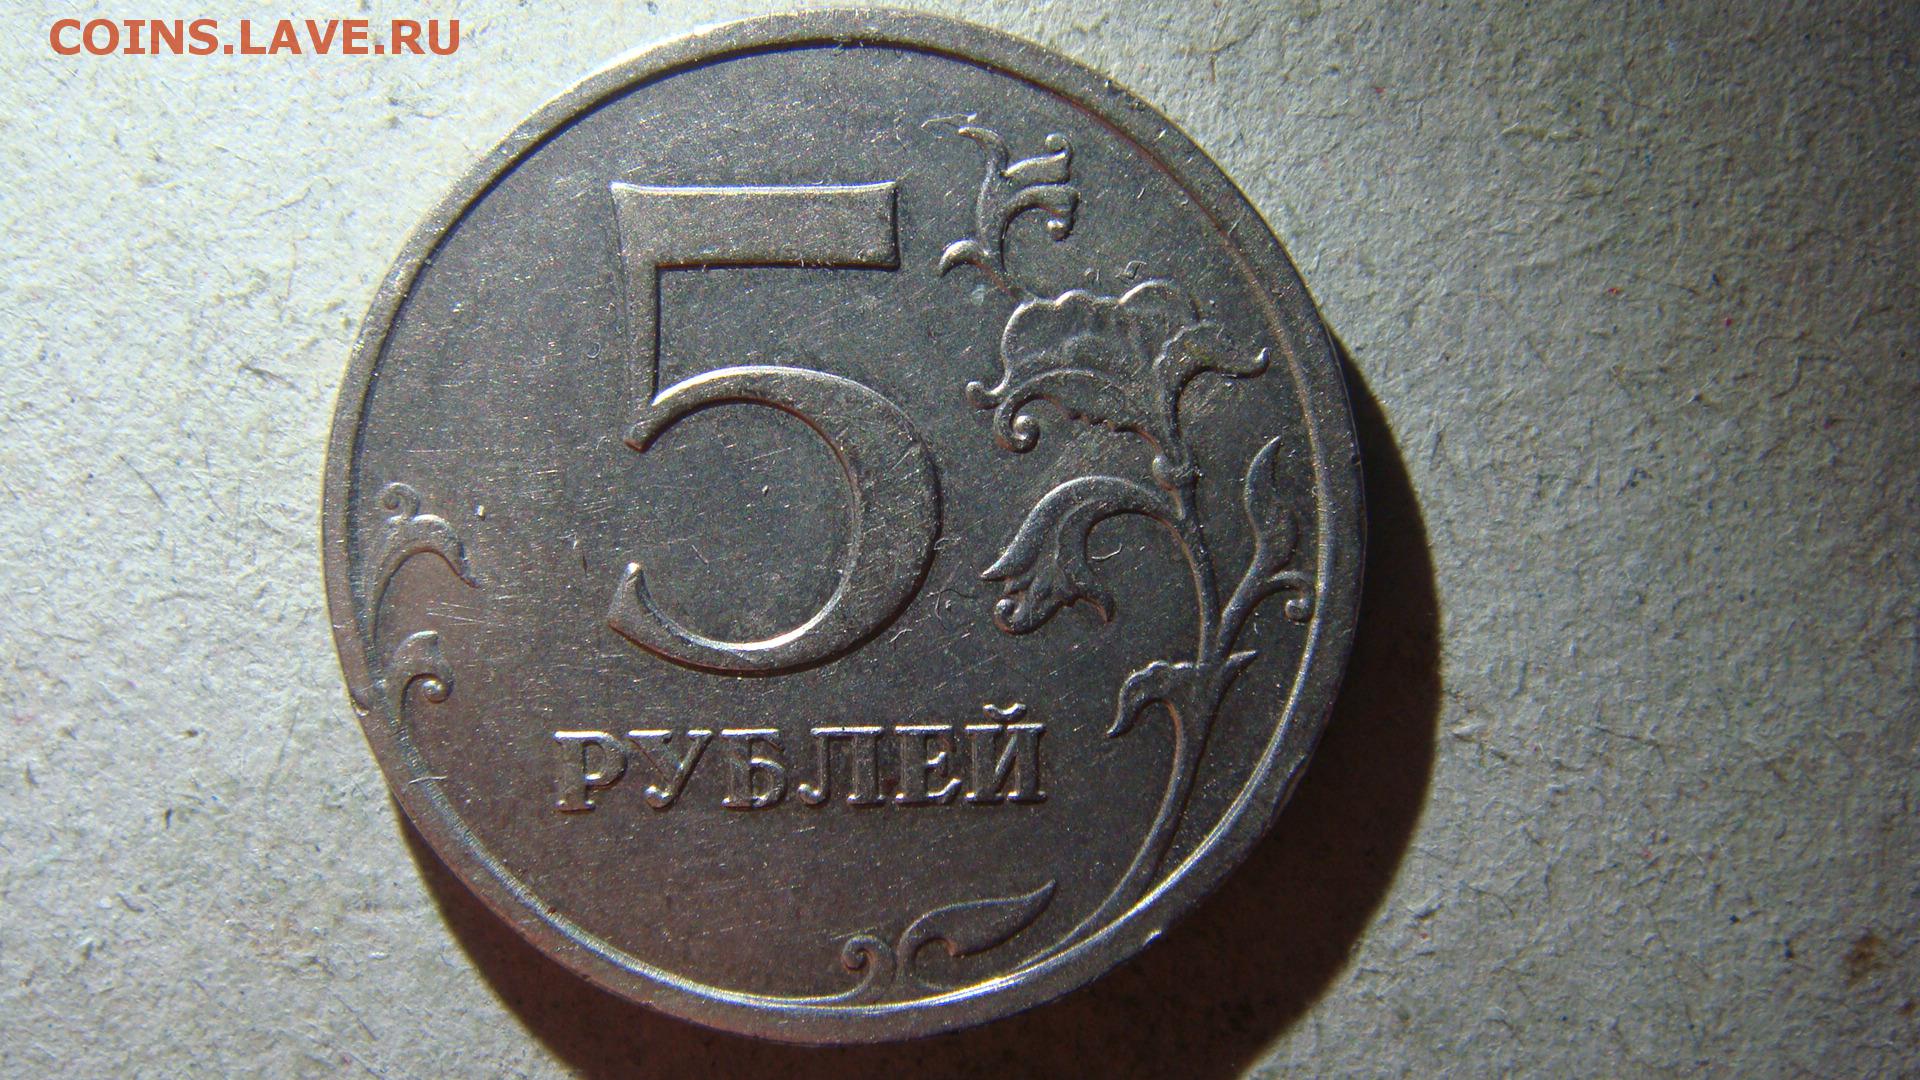 5 рублей с литра. 5 Рублей 1998 года ММД. Монета 5 рублей 1998 года. 5 Рублей 1998 года. 5 Руб 1998/год ММД.